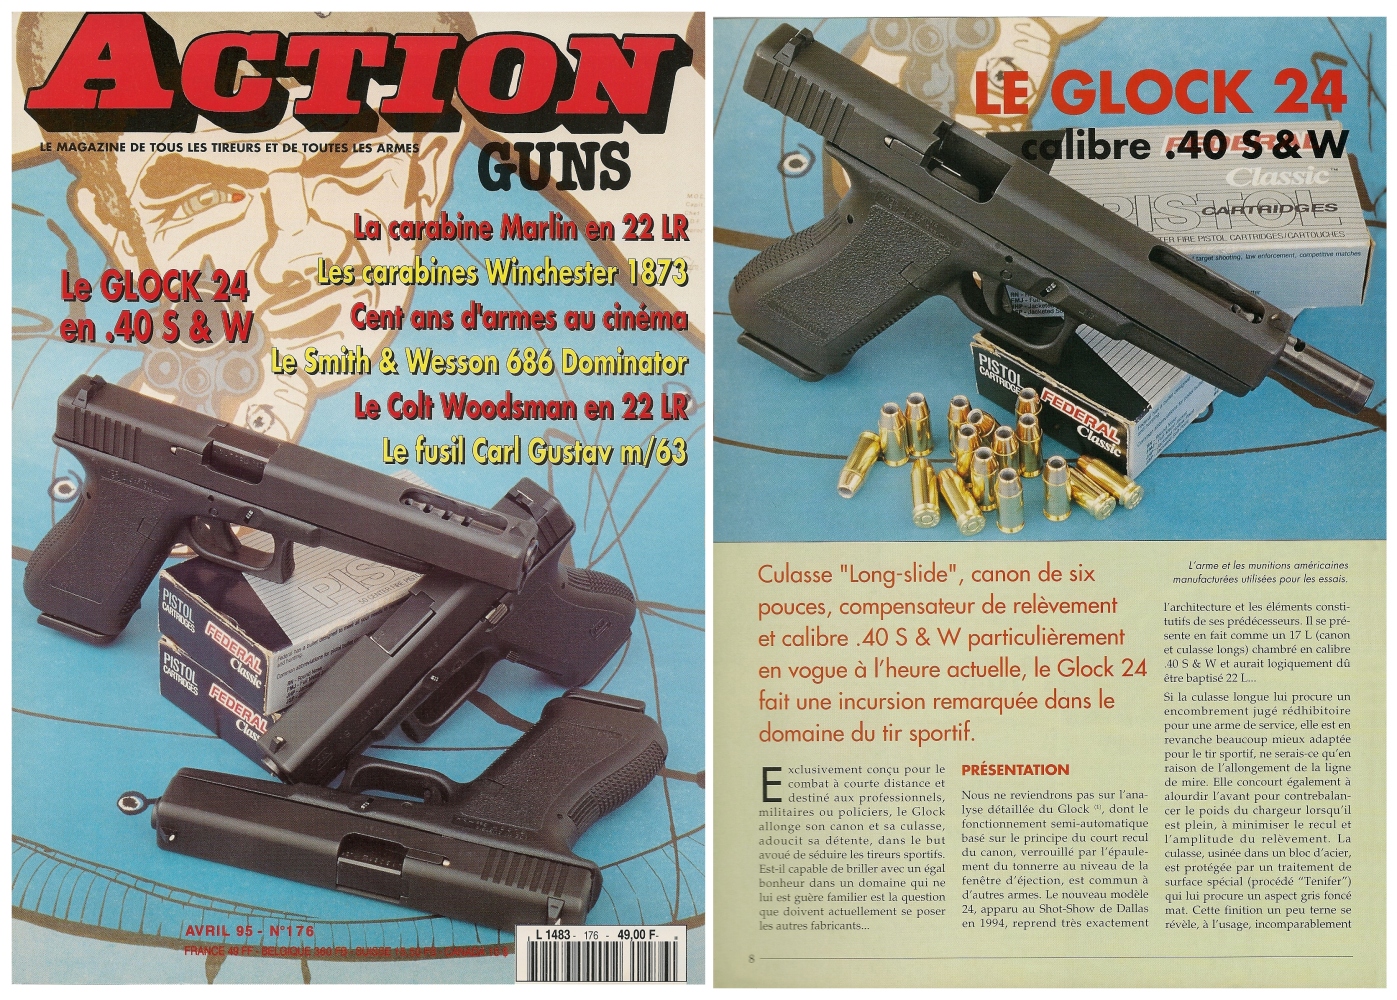 Le banc d'essai du pistolet Glock 24 en calibre .40 S&W a été publié sur 7 pages dans le magazine Action Guns n° 176 (avril 1995). 